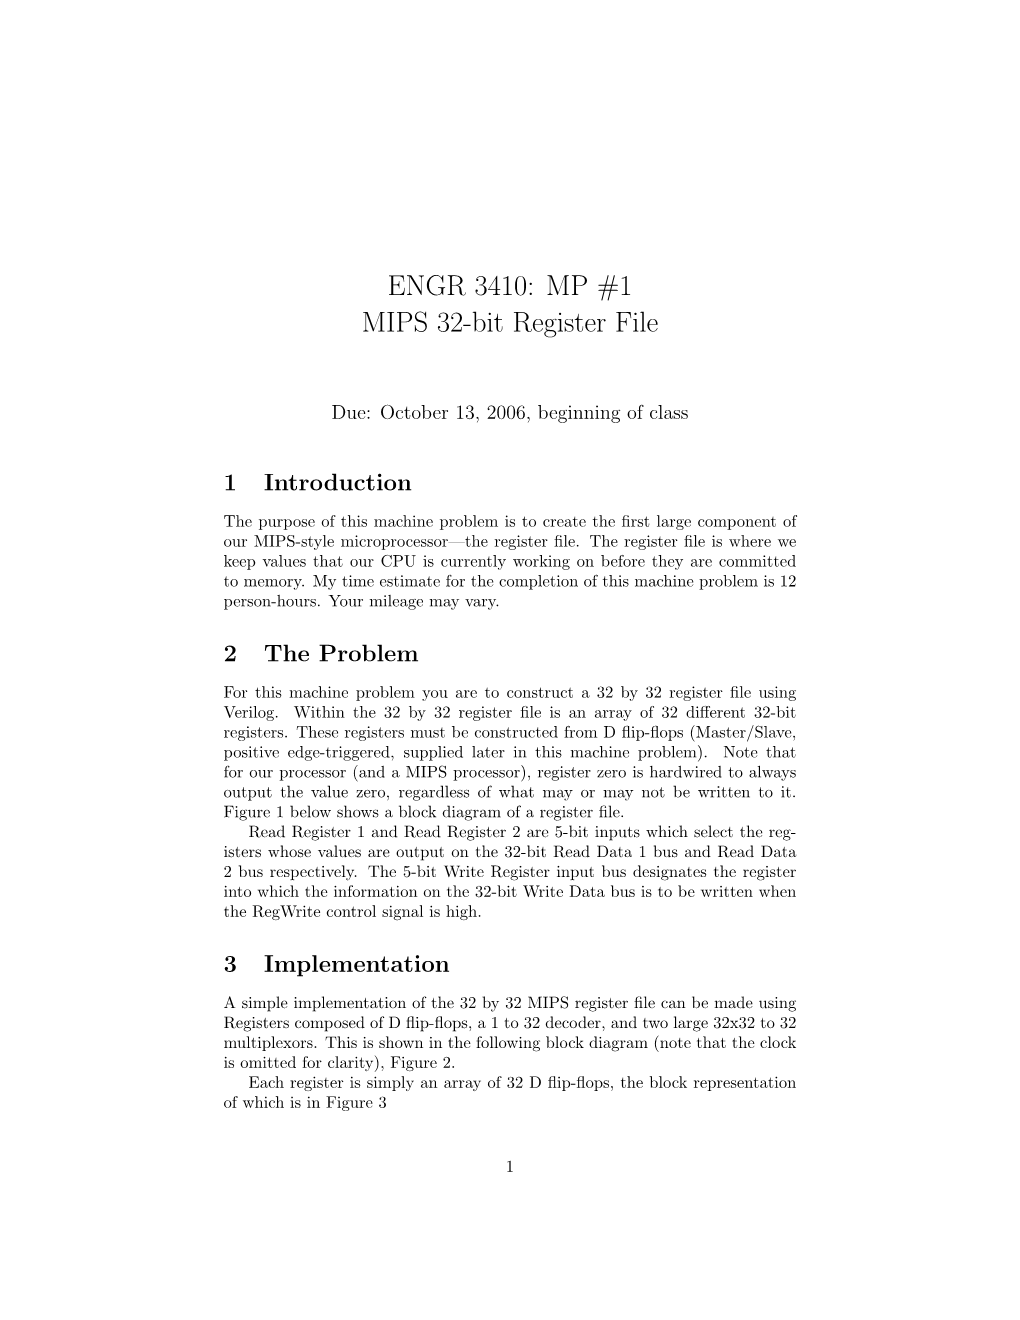 ENGR 3410: MP #1 MIPS 32-Bit Register File